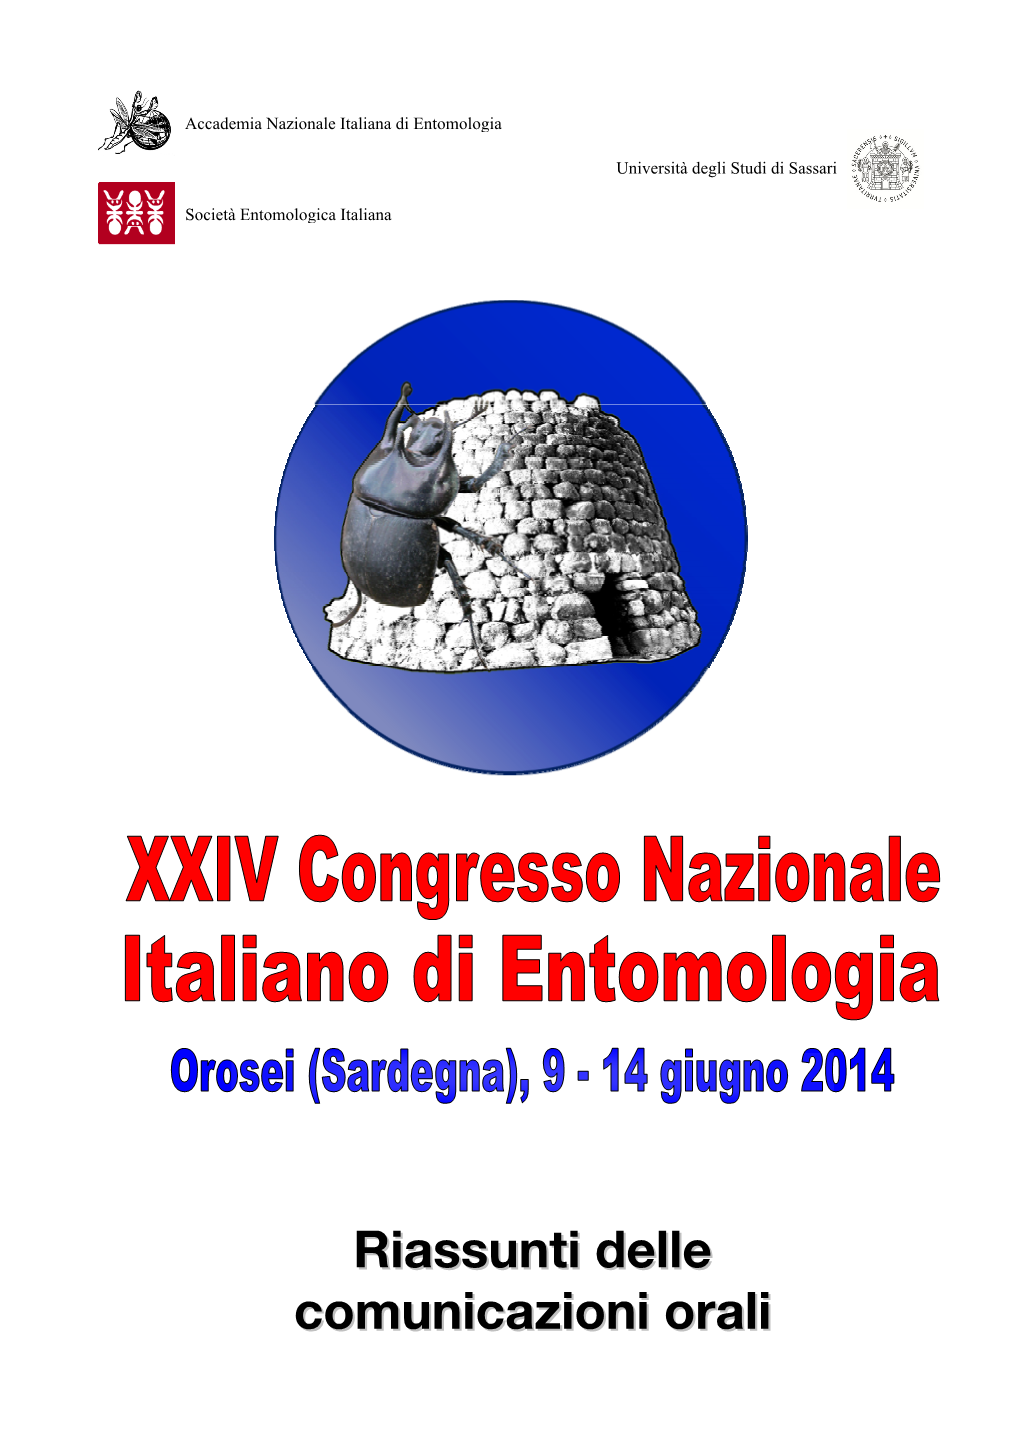 Riassunti Delle Comunicazioni Orali Presentate in Occasione Del XXIV Congresso Nazionale Italiano Di Entomologia